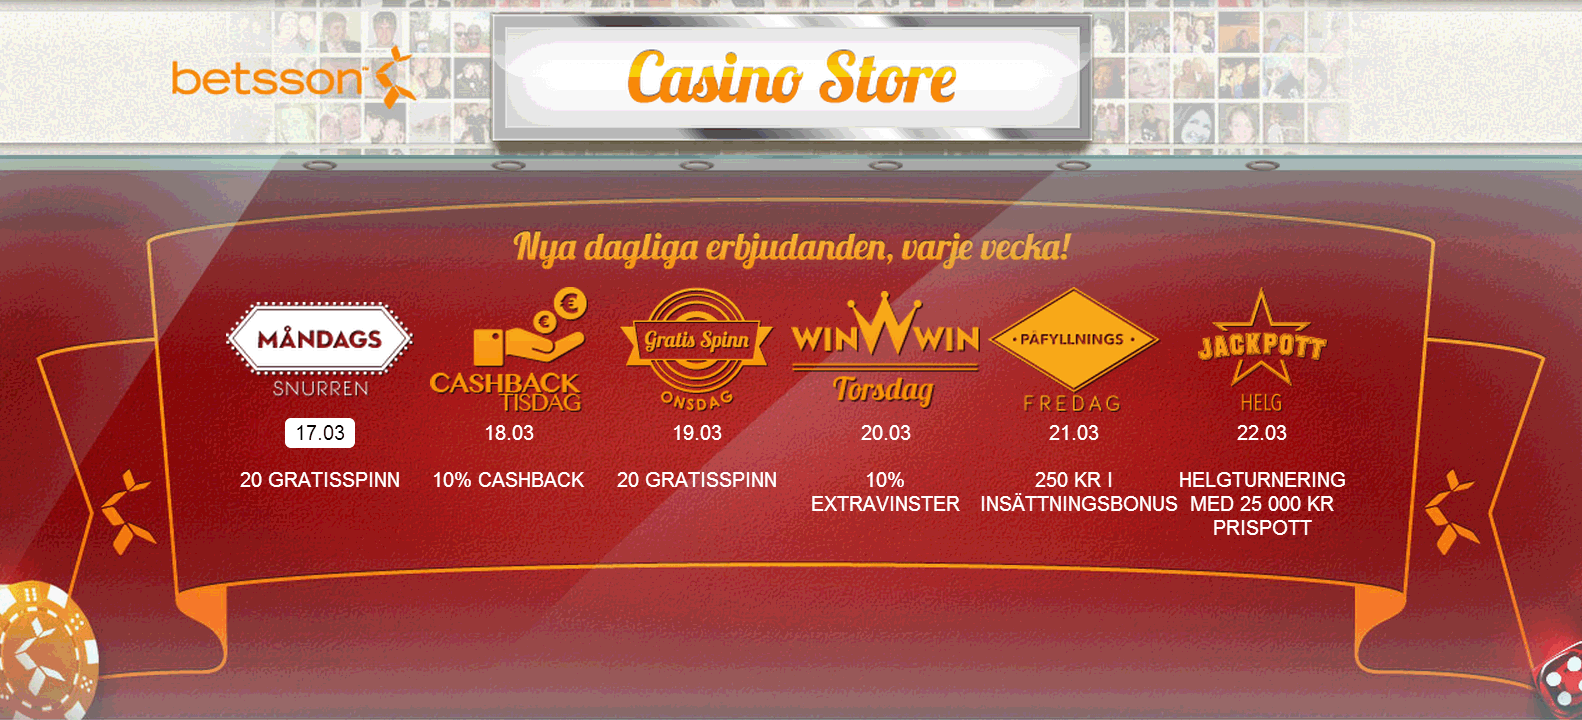 Casino tävlingar hittar - 43573